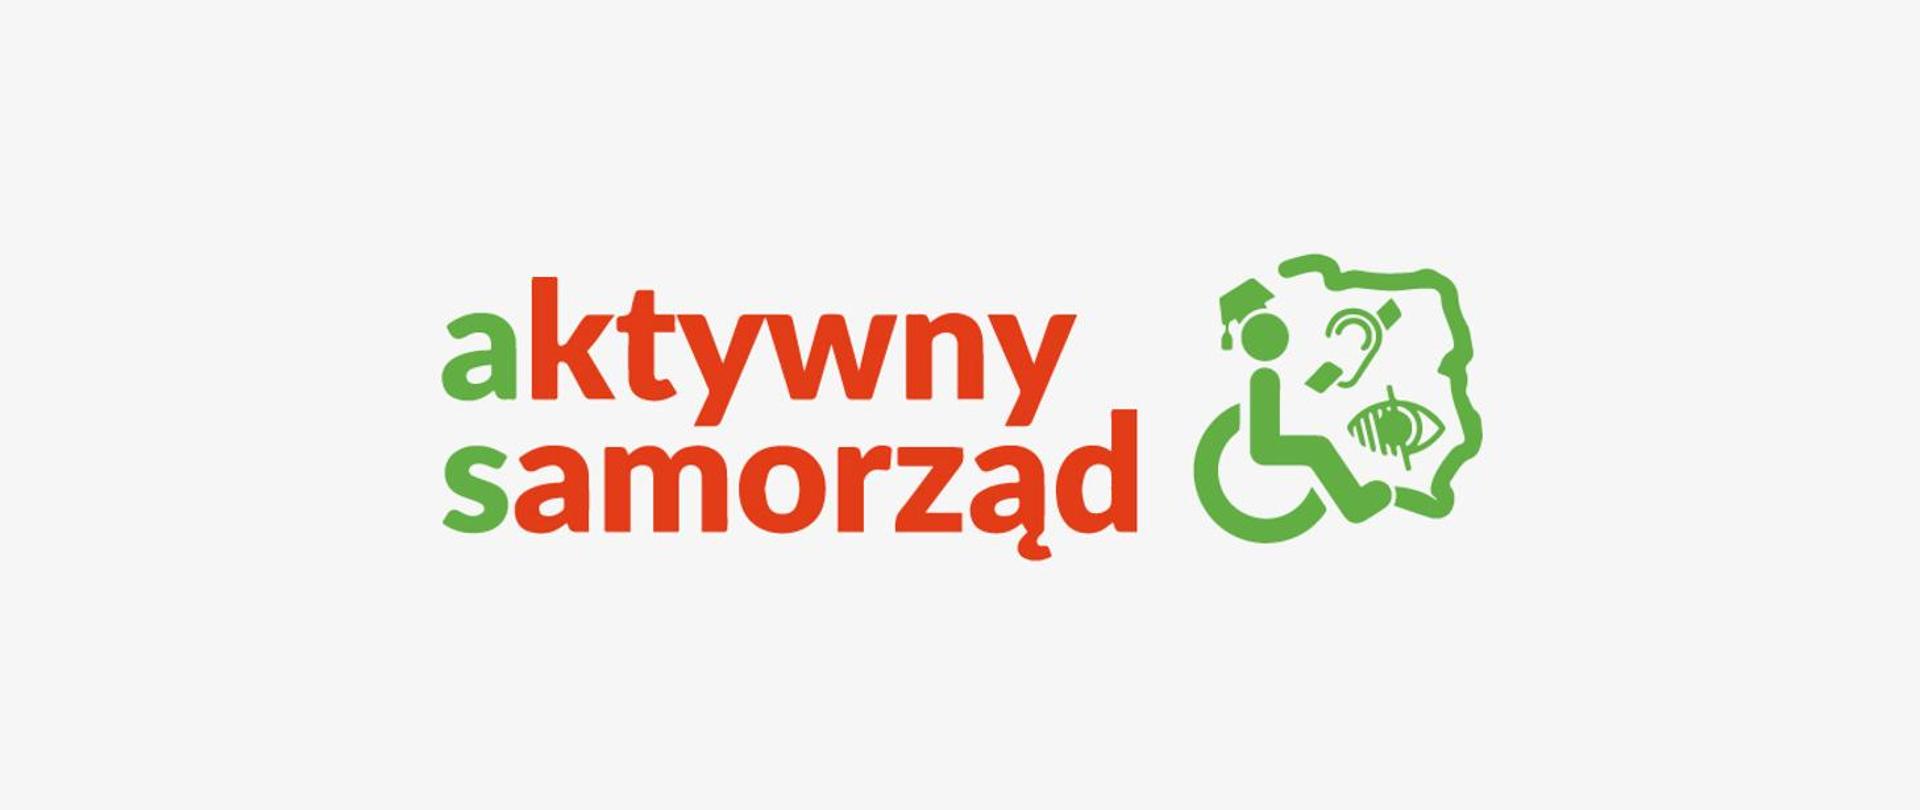 Czerwono zielony napis aktywny samorząd. Logo osoby na wózku inwalidzkim oraz zarys państwa Polskiego.